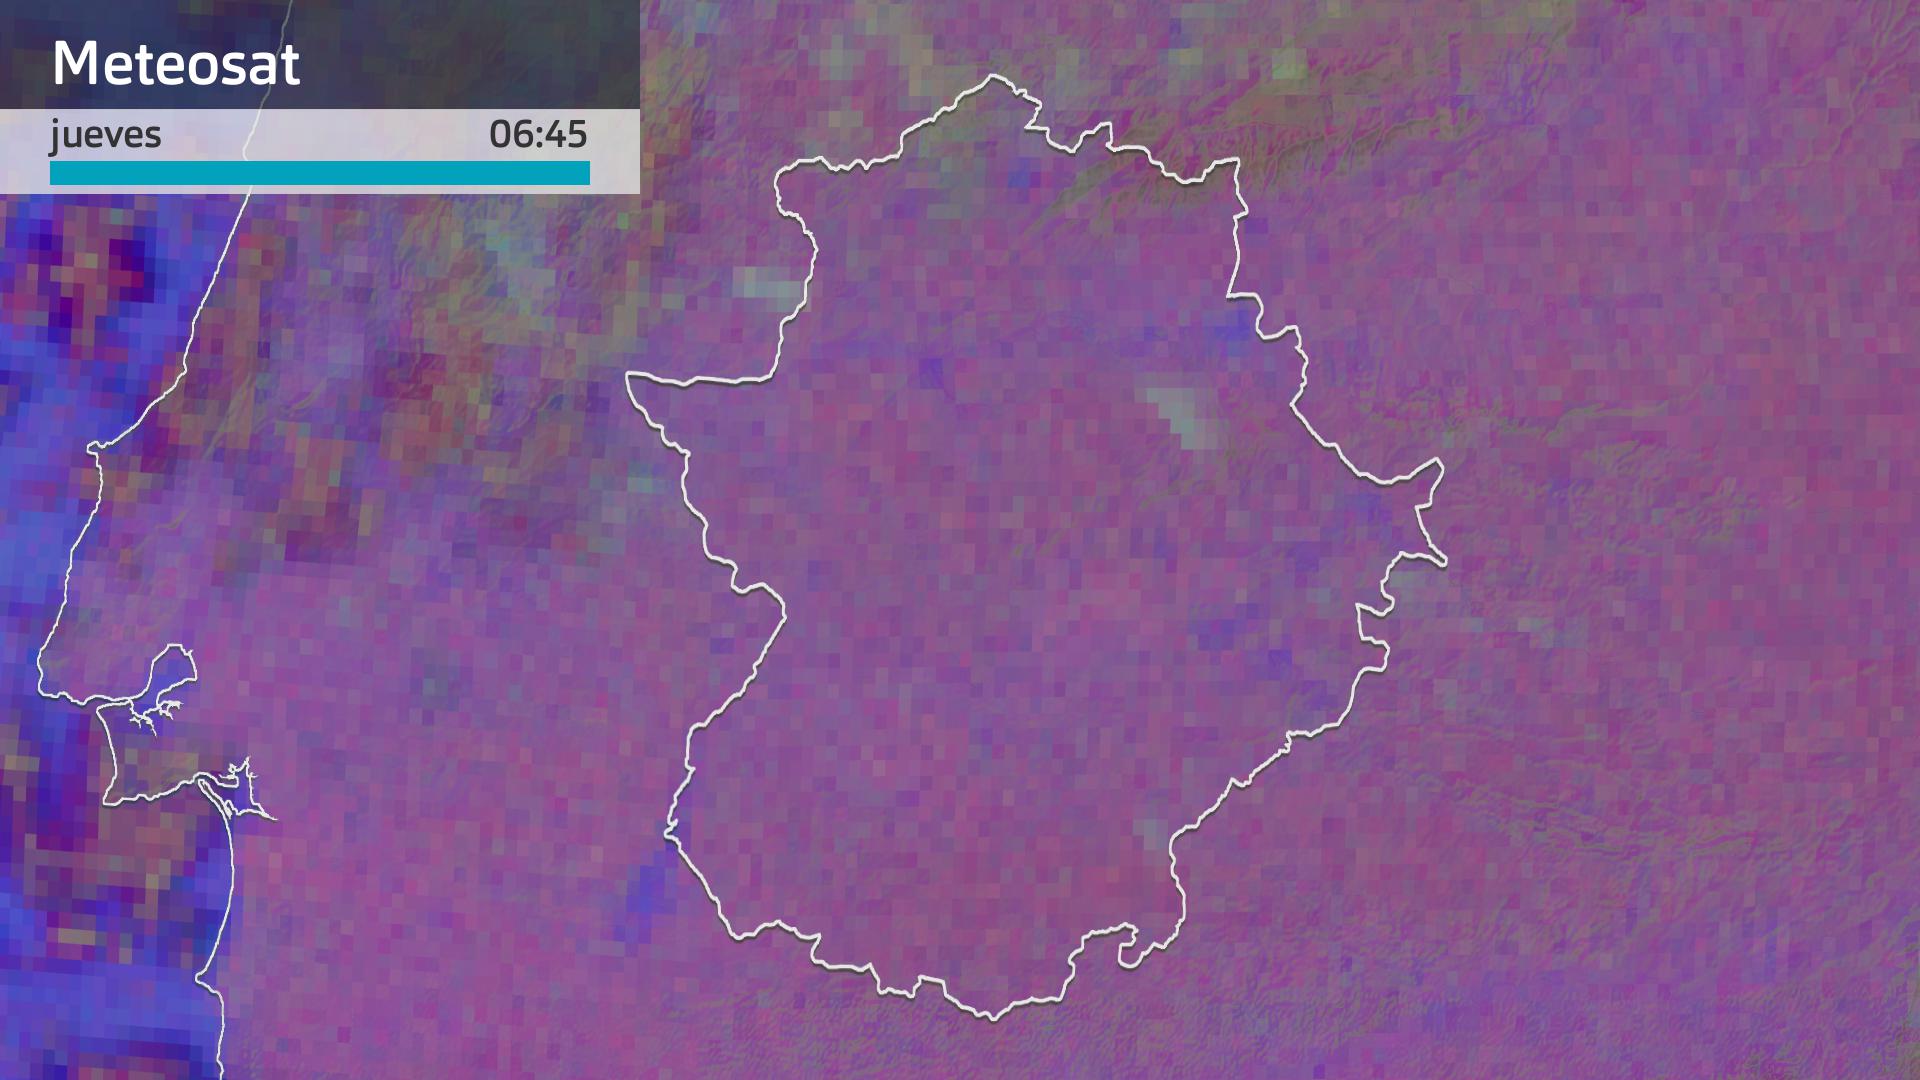 Imagen del Meteosat jueves 2 de mayo 6:45 h.